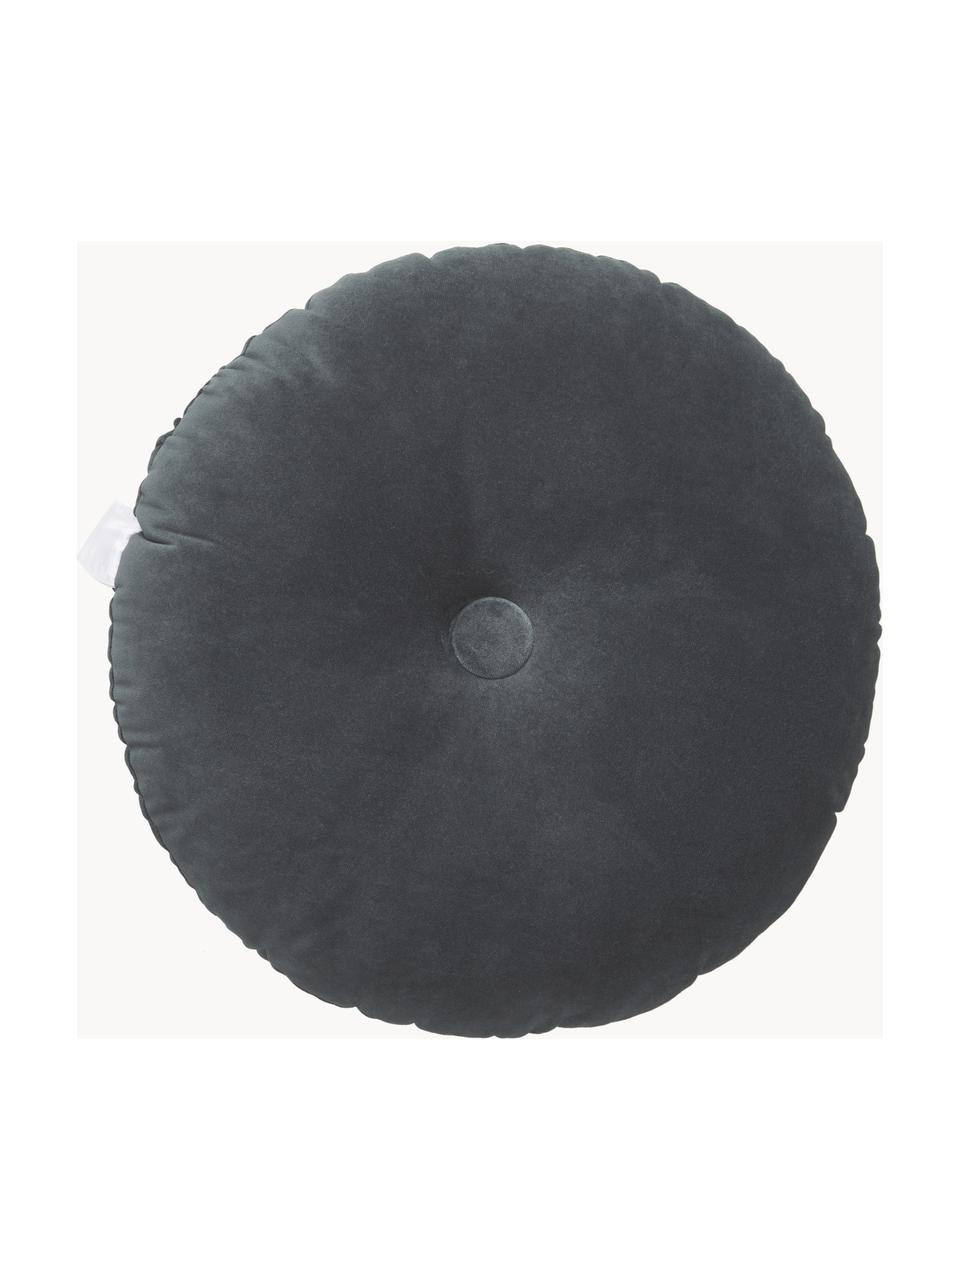 Okrągła poduszka z aksamitu Monet, Tapicerka: 100% aksamit poliestrowy, Ciemny szary, Ø 40 cm